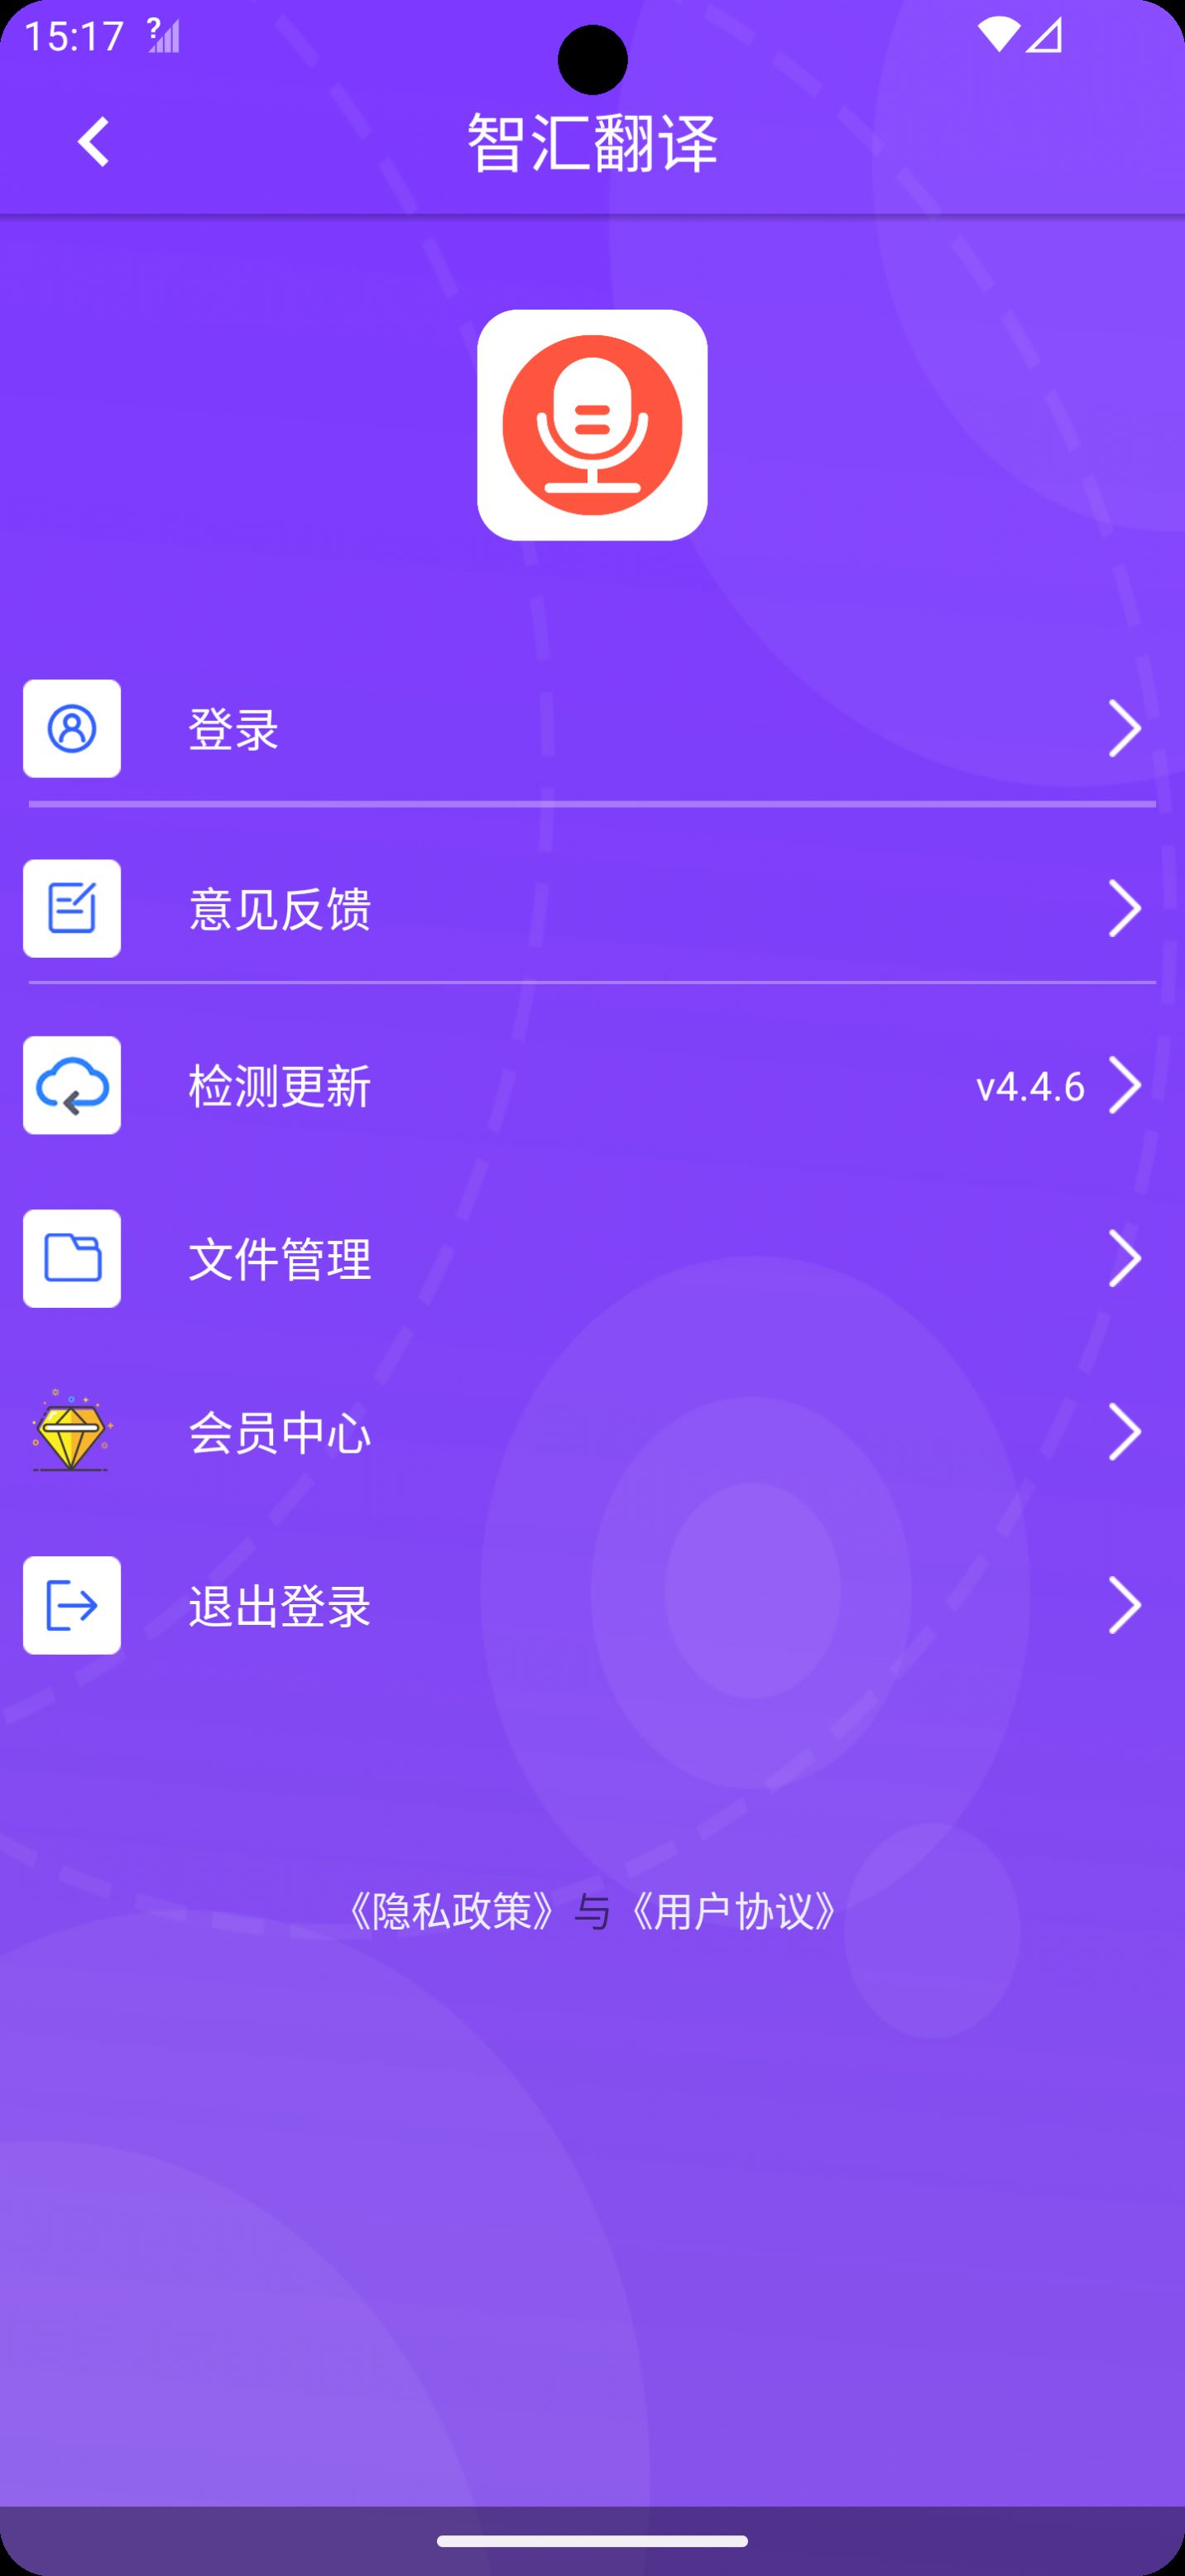 智汇翻译app,智汇翻译最新版